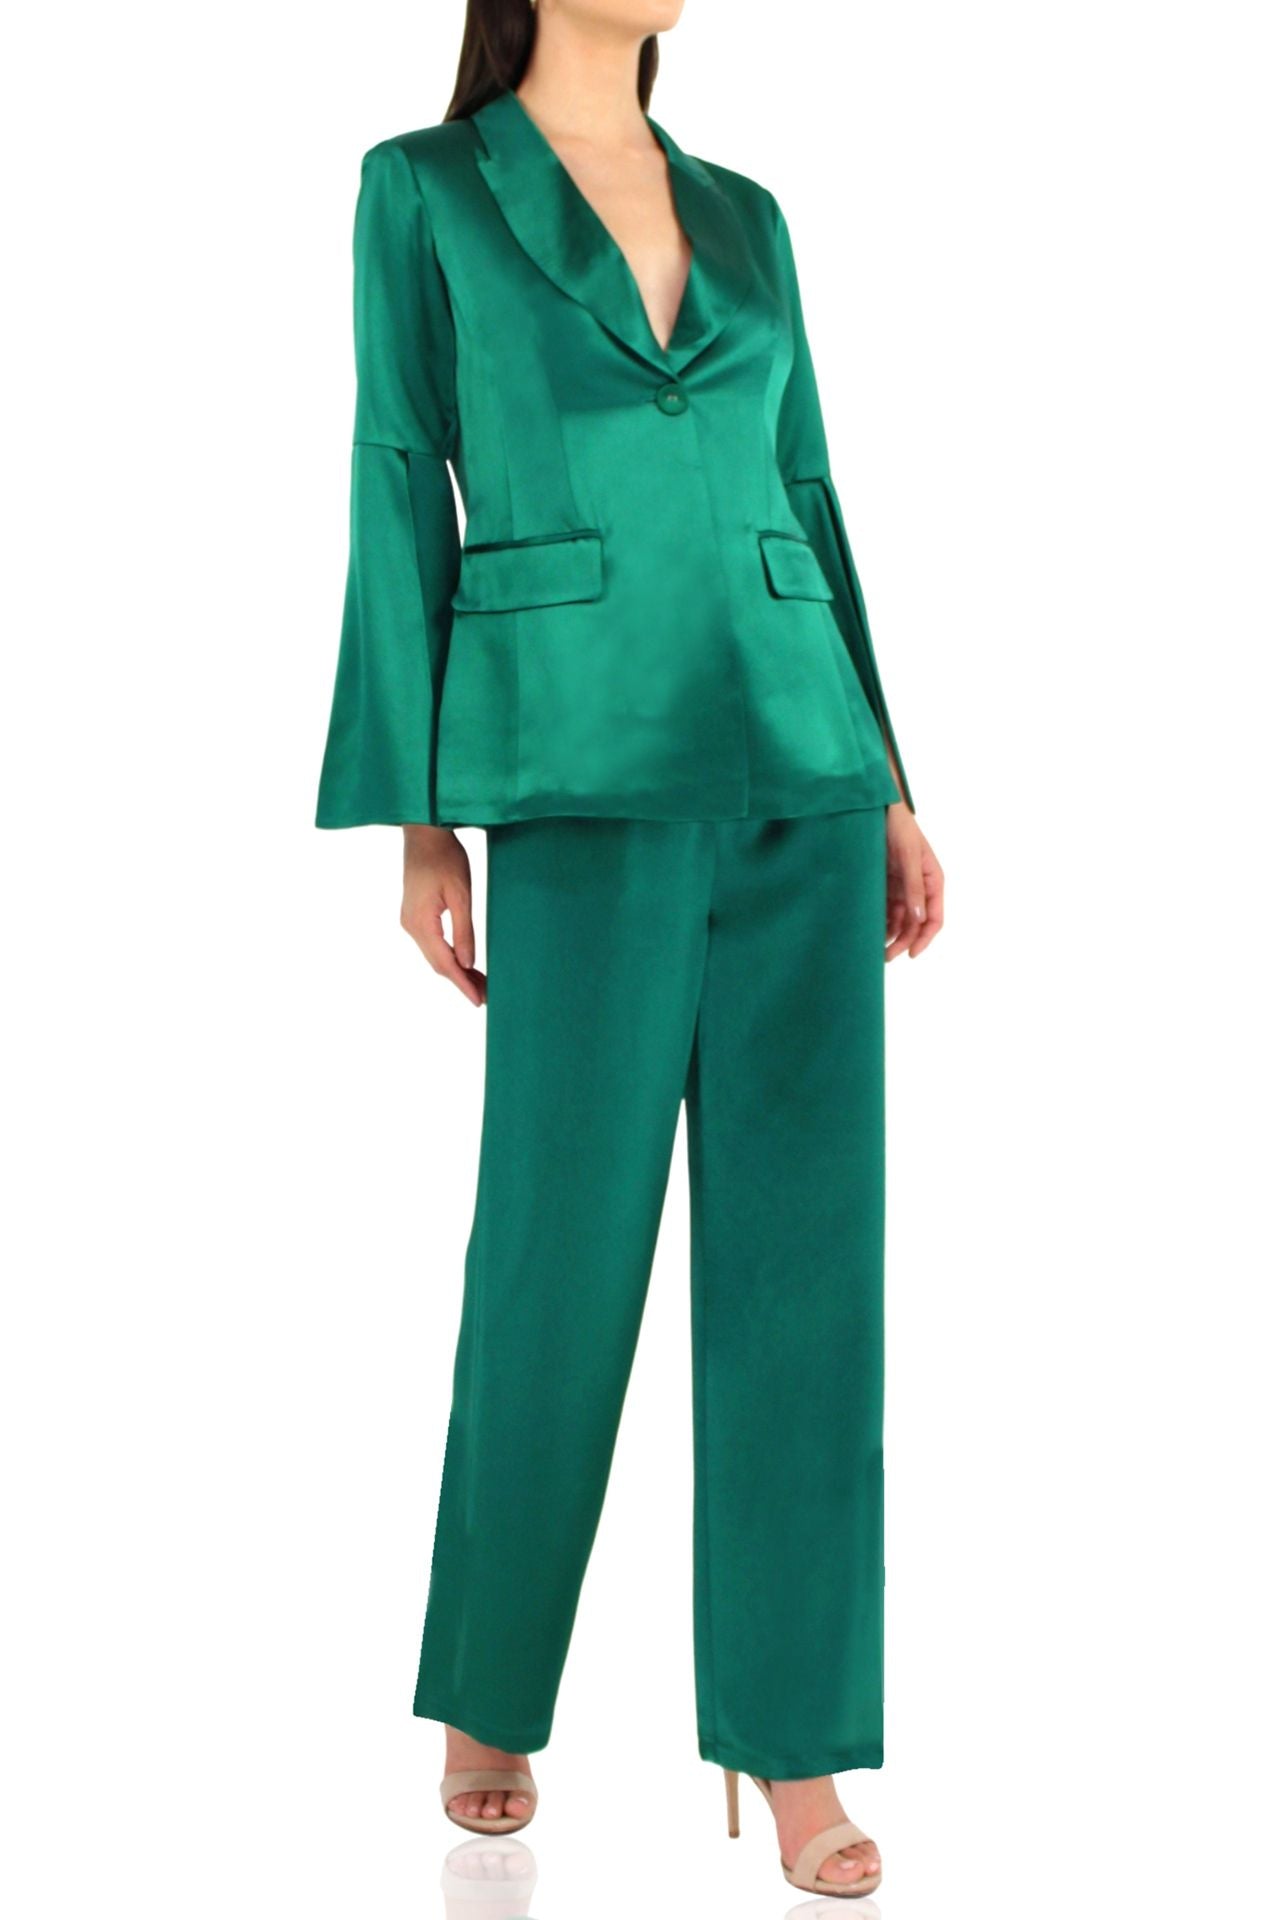 Green Matching Suit Set